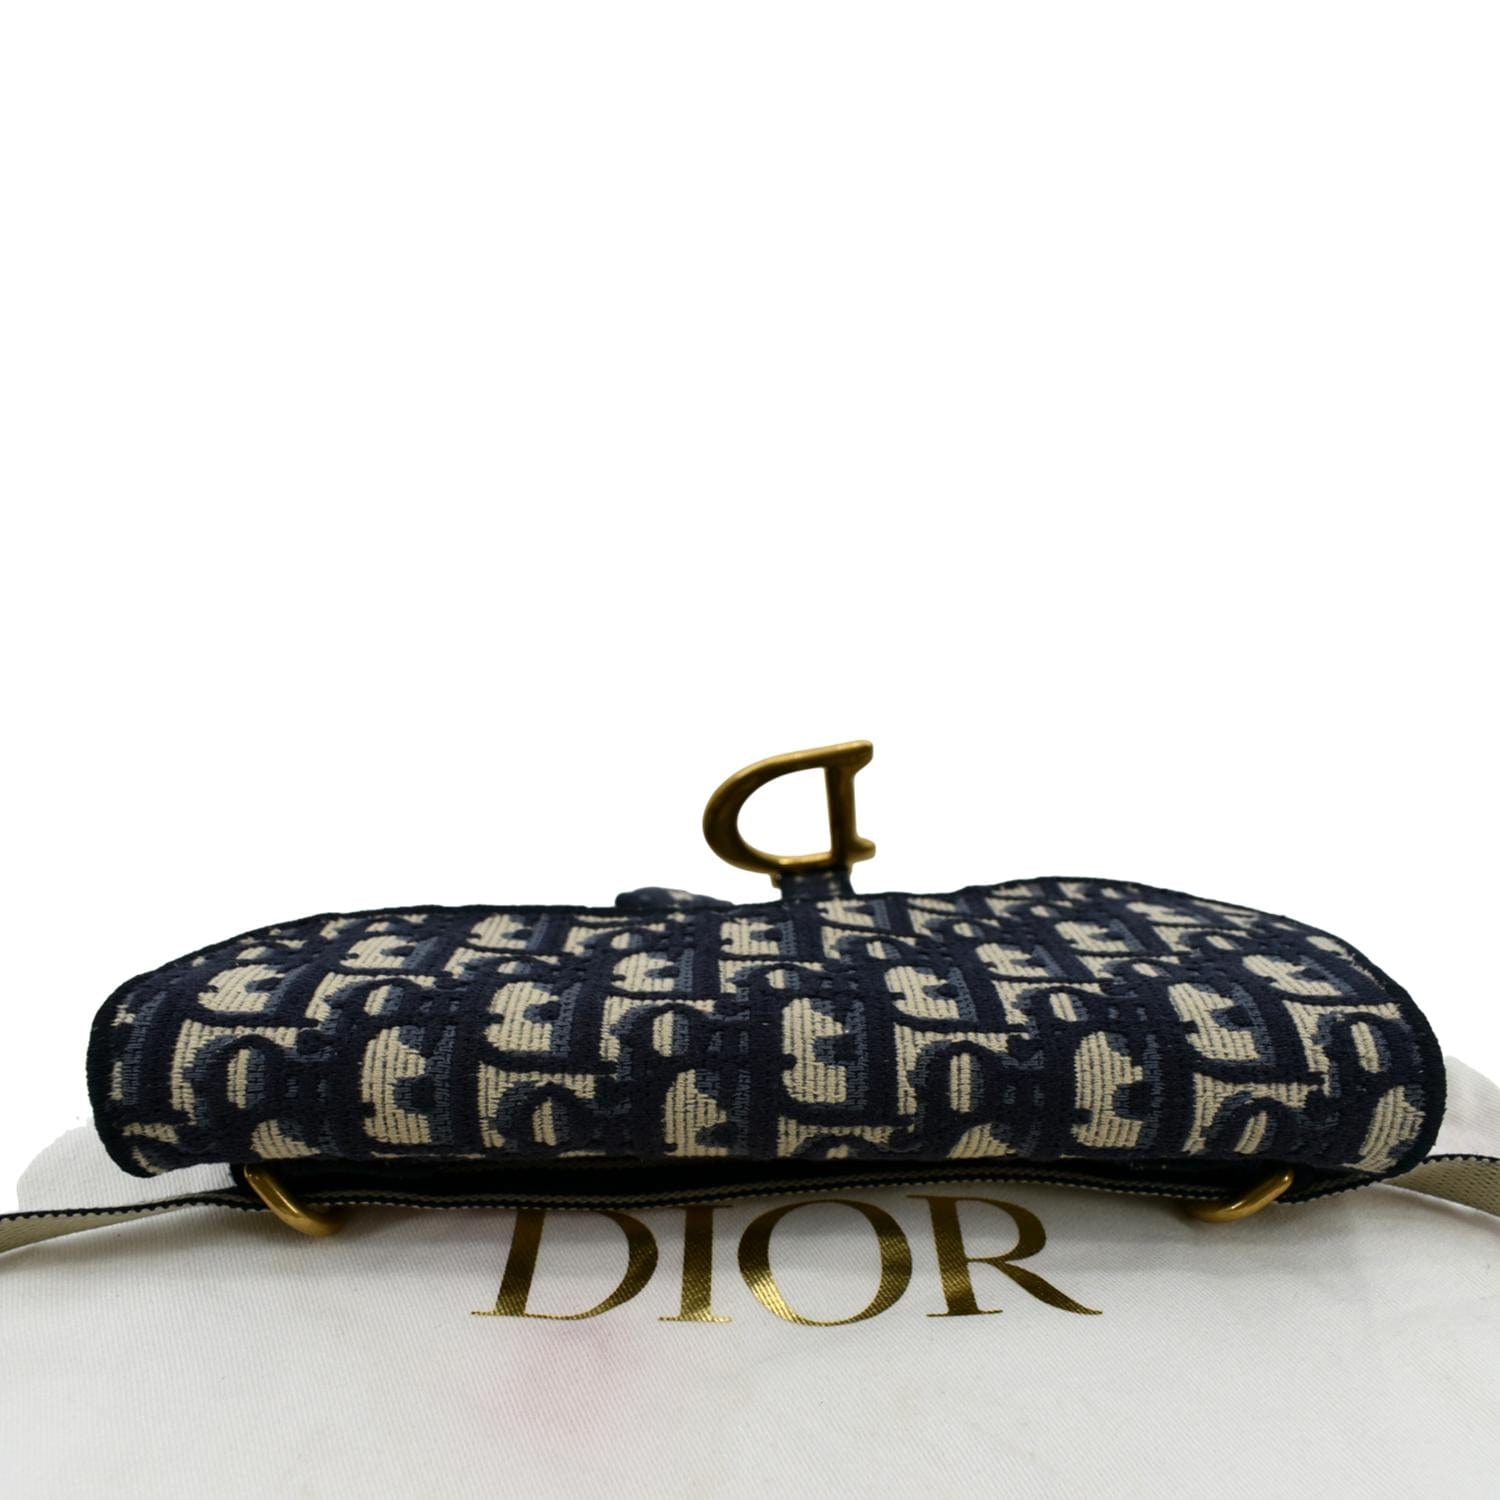 Christian-Dior-Saddle-Bag-Trotter-Canvas-Leather-Shoulder-Bag-Navy